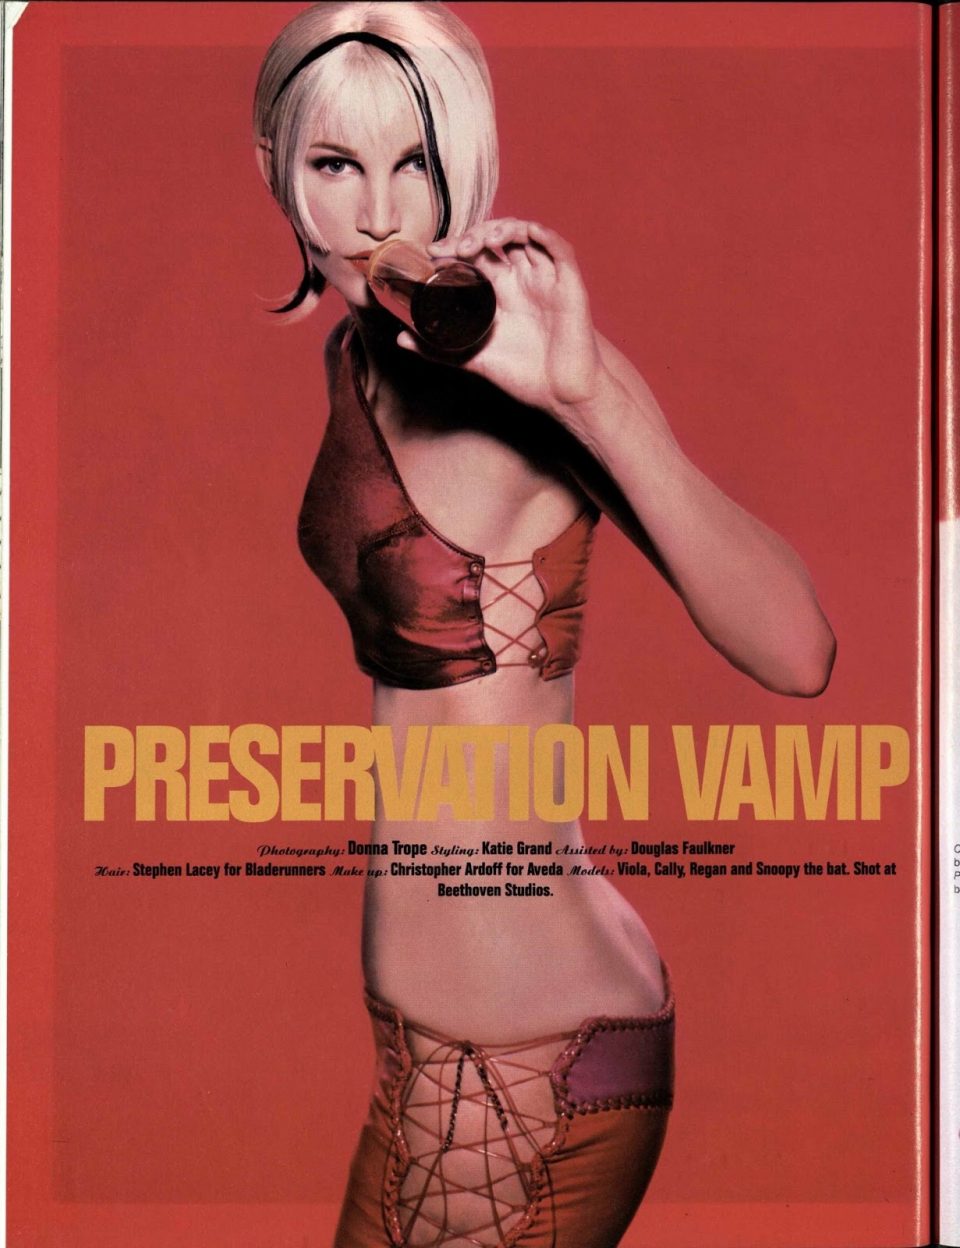 Fotografia dalla serie "Preservation Vamp" per Dazed and Confused, Donna Trope, 1995